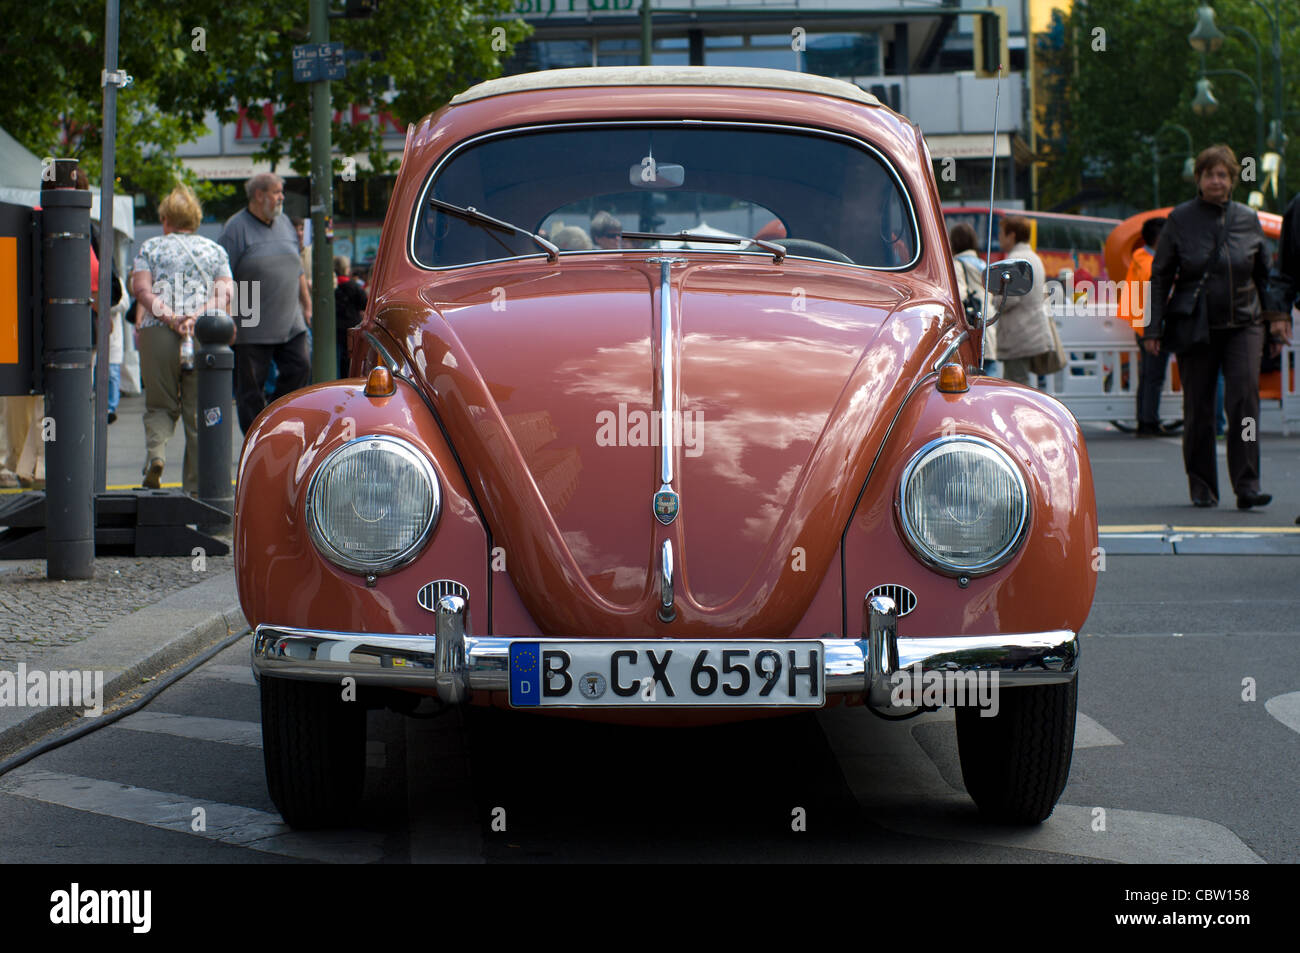 Car Volkswagen Beetle Stock Photo